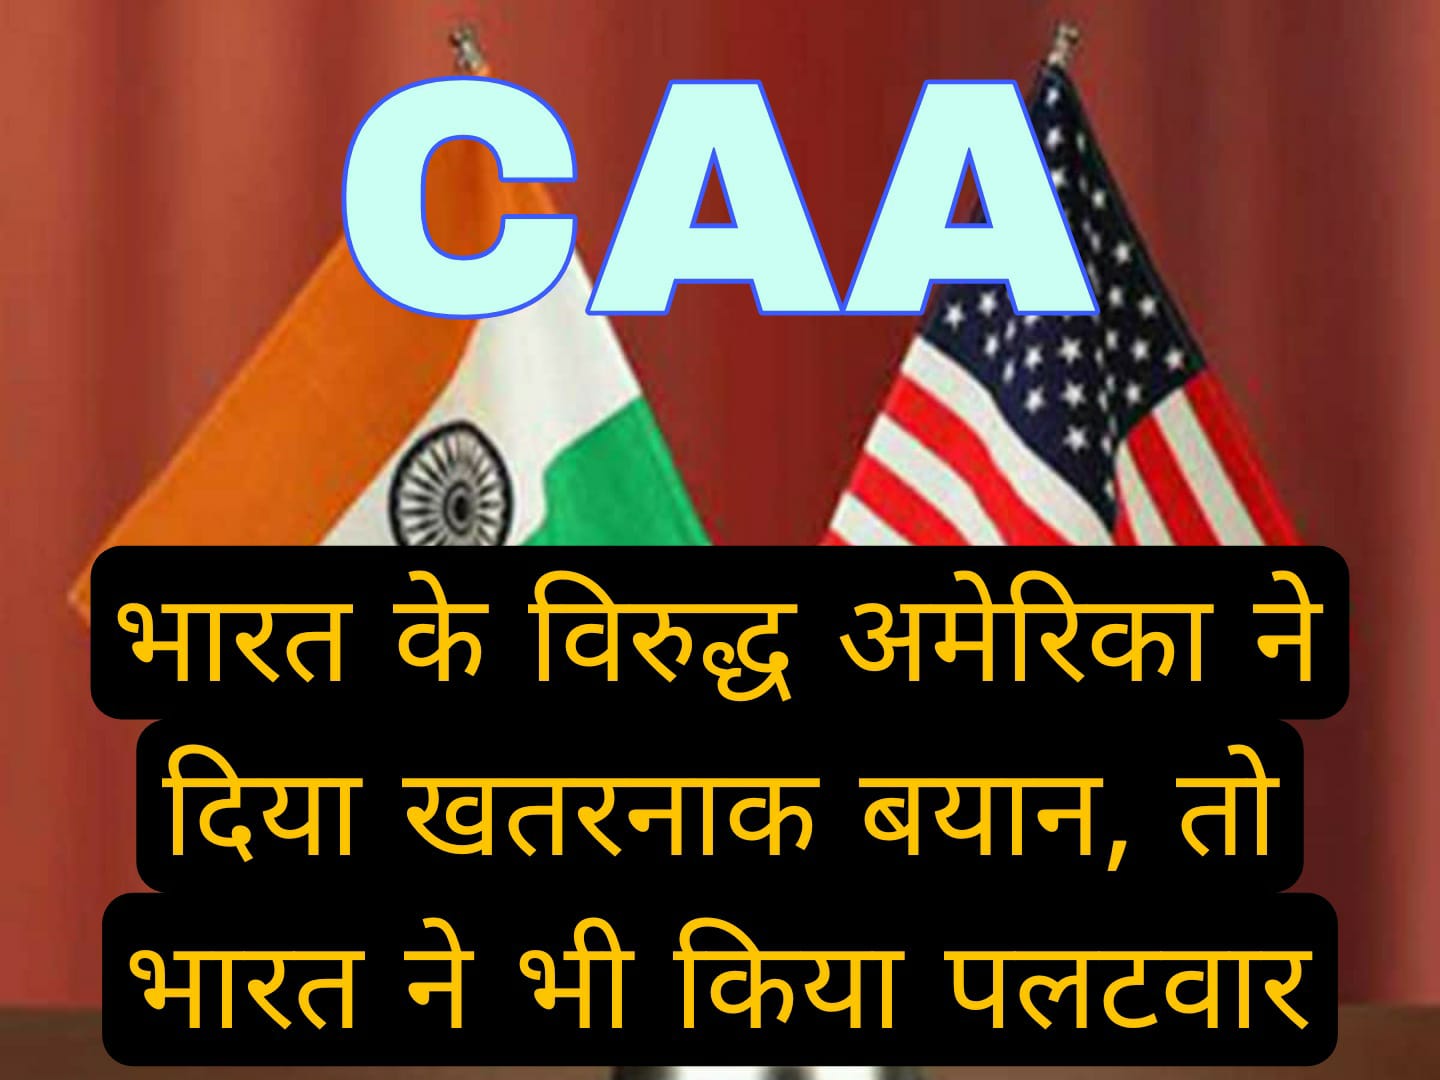 भारत के विरुद्ध अमेरिका का खतरनाक बयान, मोदी सरकार ने कहा- सीमित समझ वाले से नहीं चाहिए ज्ञान